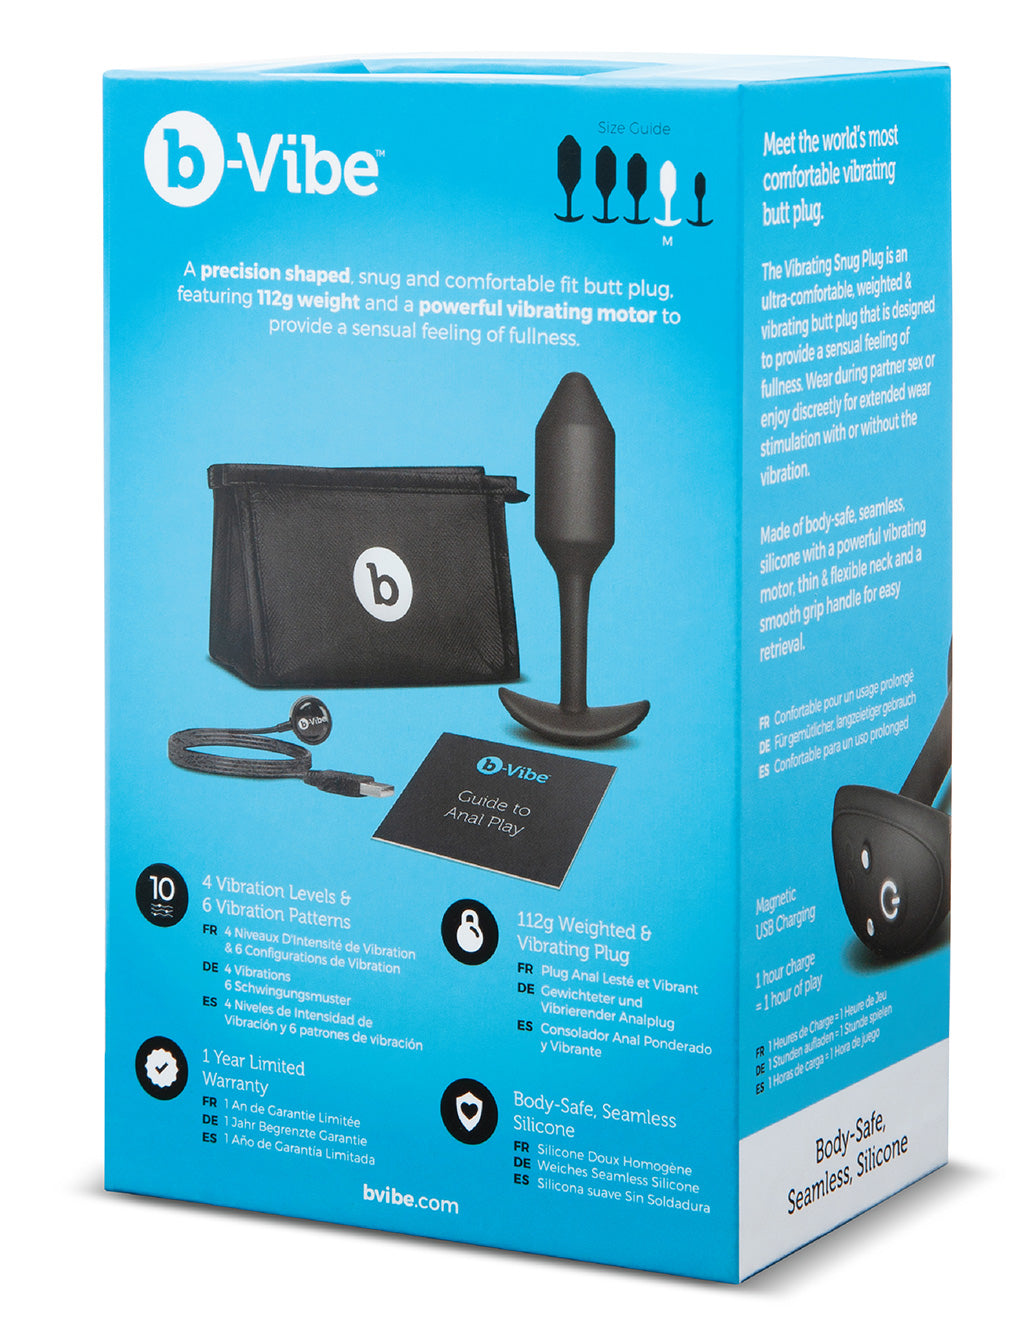 B-Vibe Medium Vibrating Snug Plug- Black- Back box